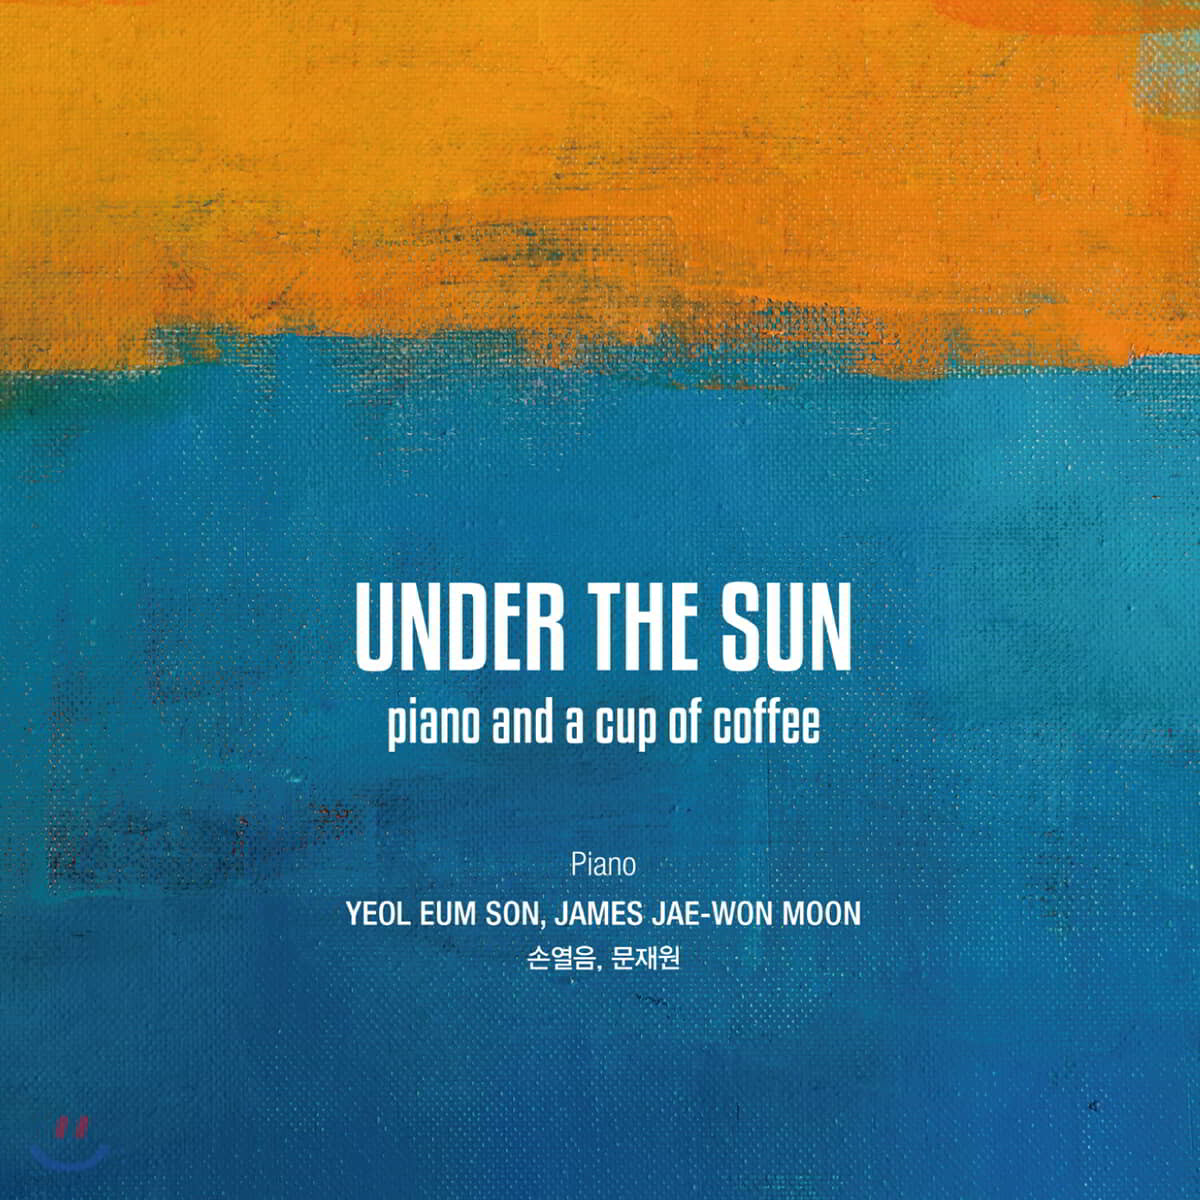 손열음 / 문재원 - 카페음악 프로젝트 앨범 (Under the Sun - piano and a cup of coffee)